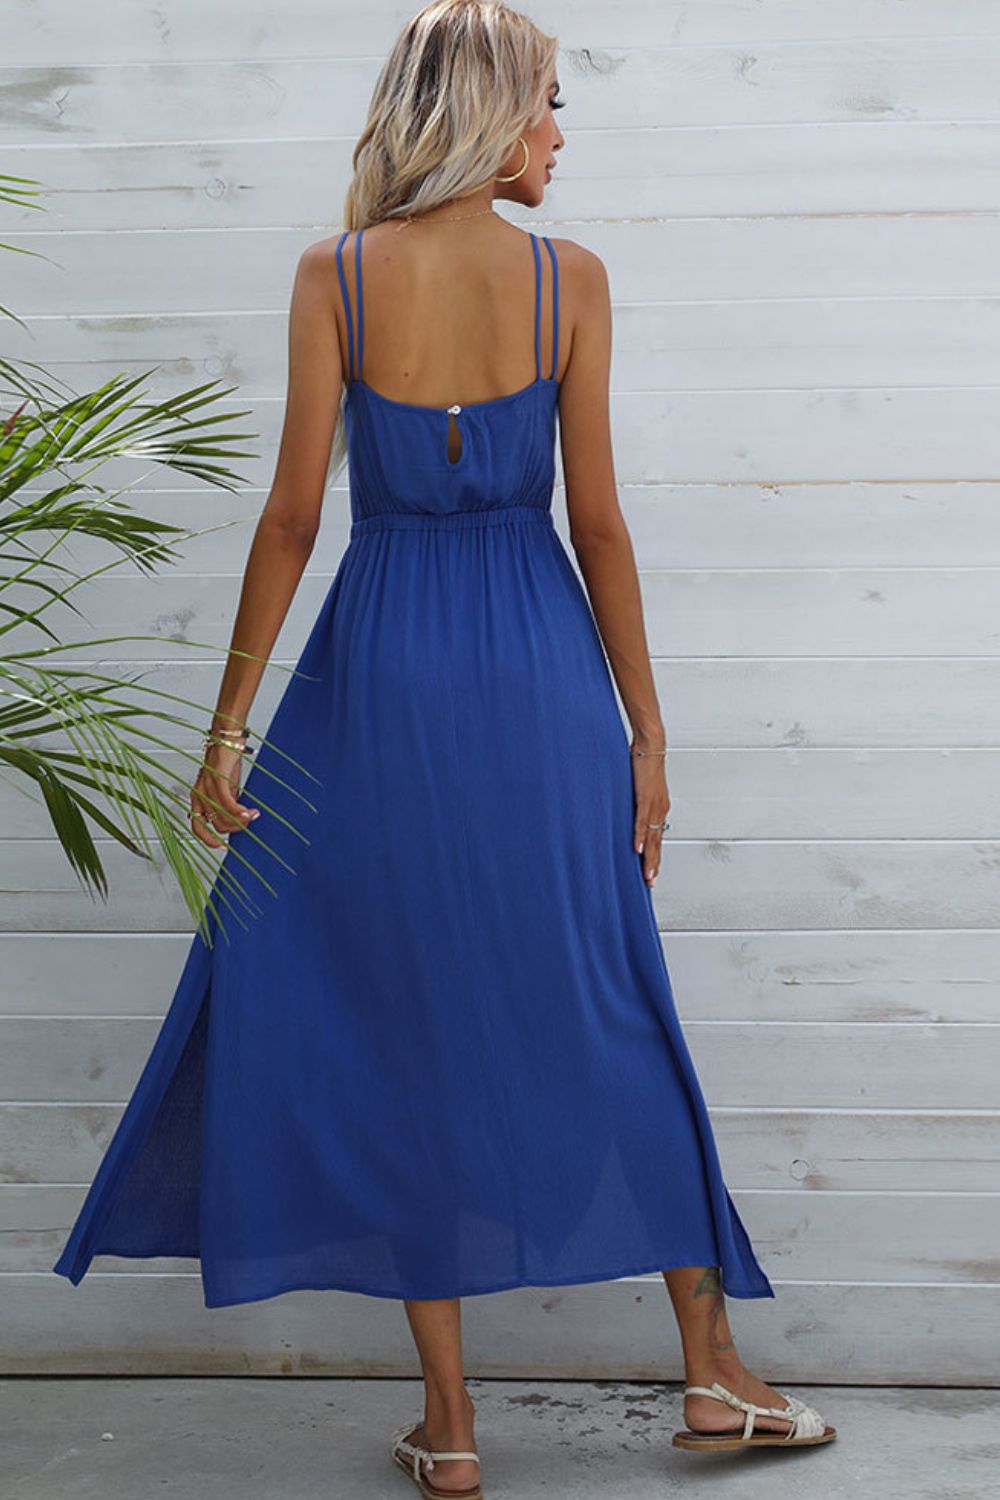 Double-Strap Side Slit Dress - Global Village Kailua Boutique